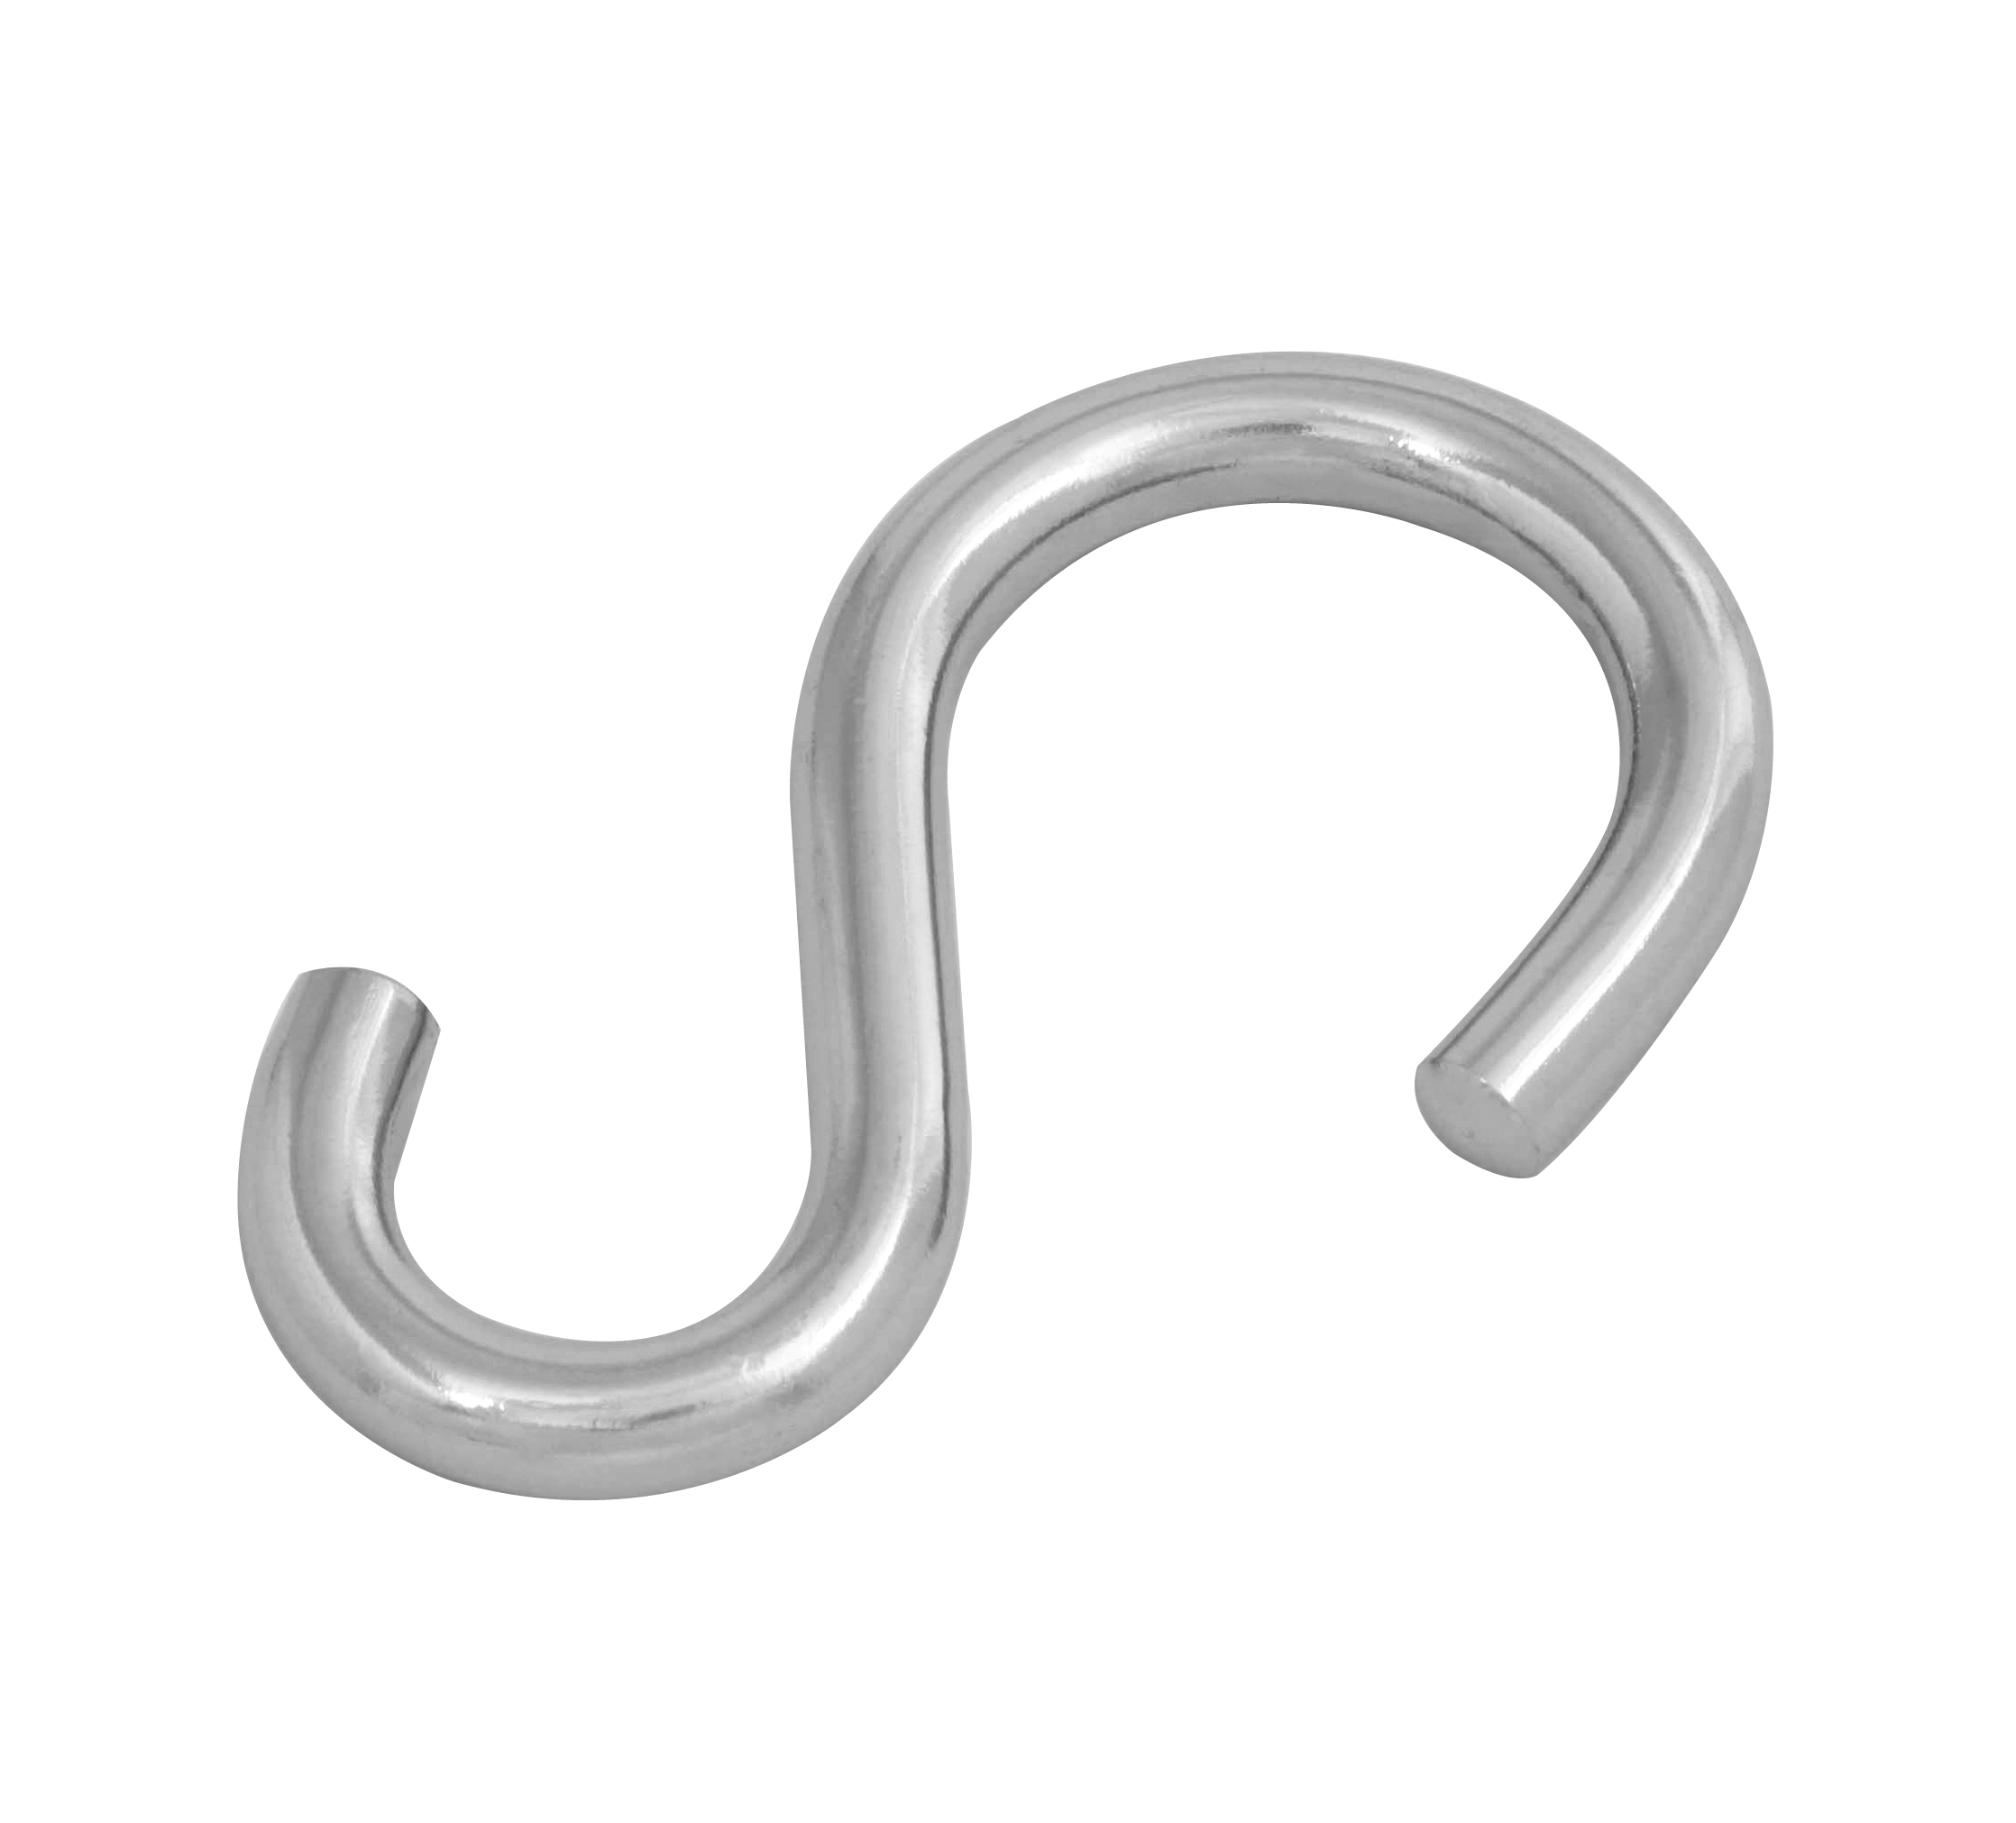 S-hook (type 1)